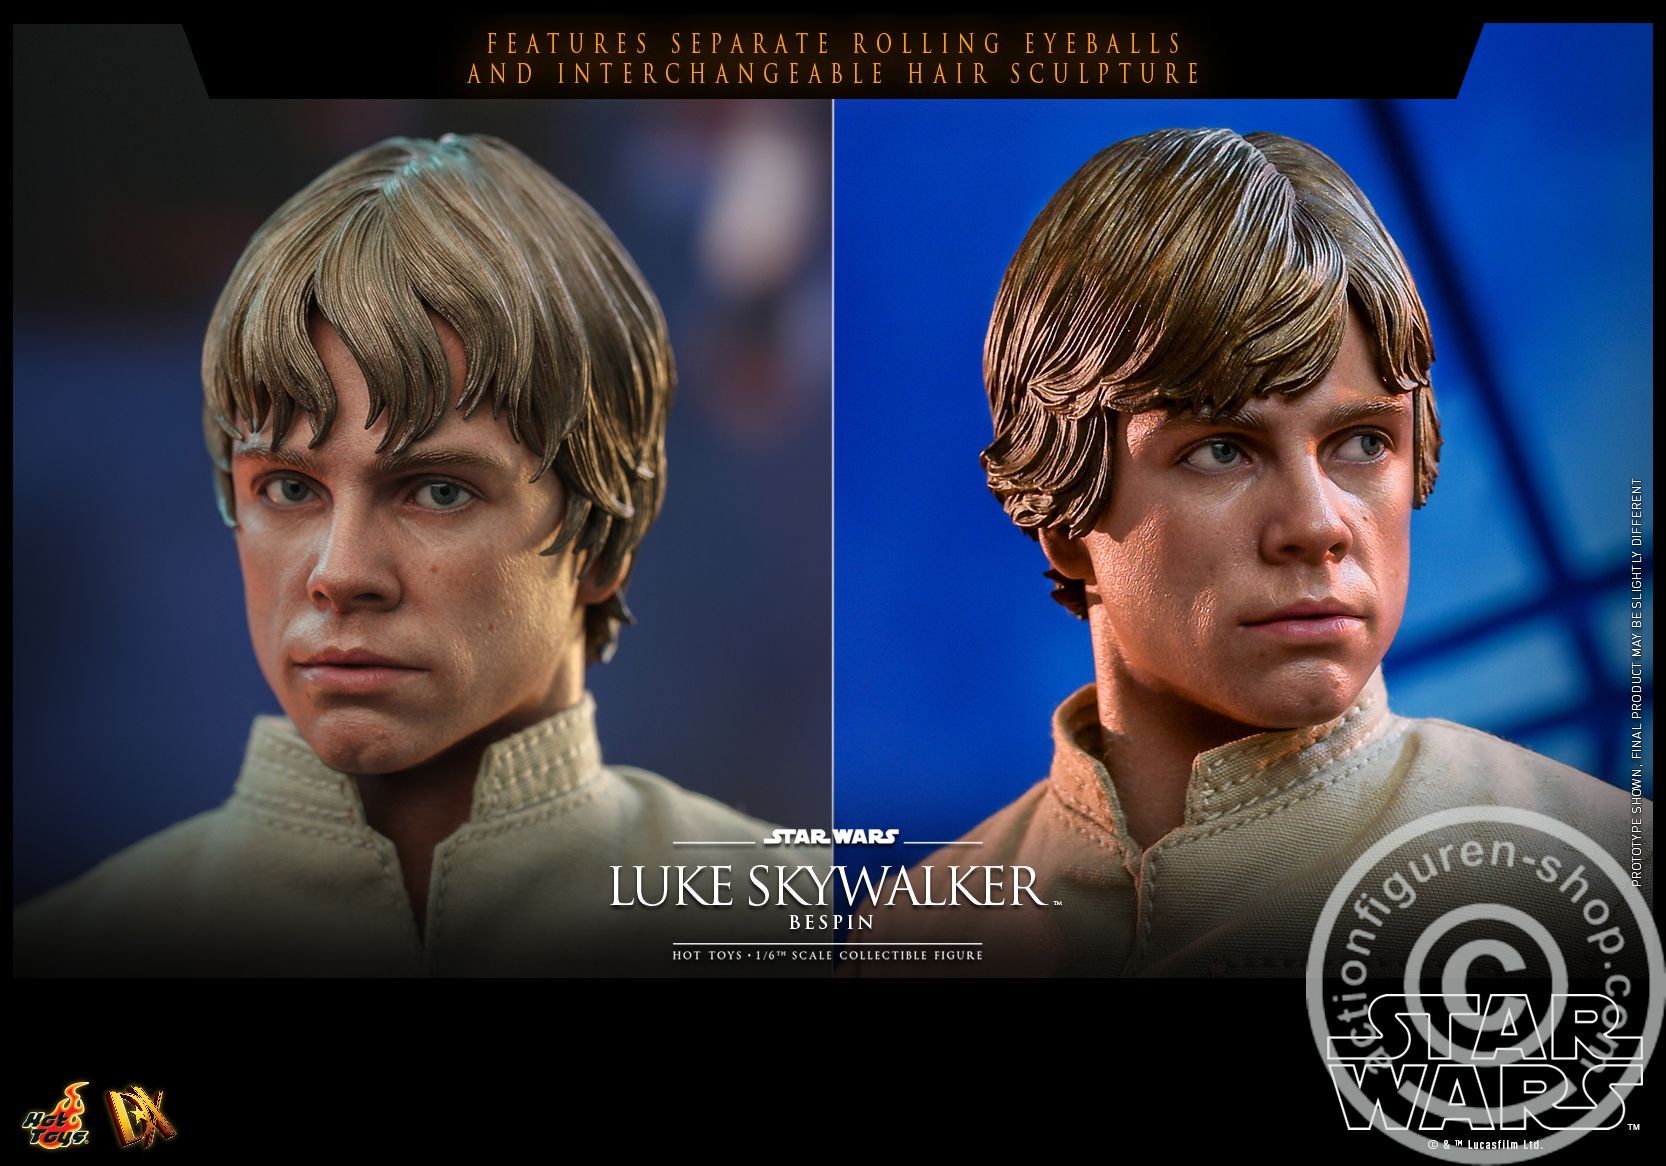 Star Wars: The Empire Strikes Back - Luke Skywalker